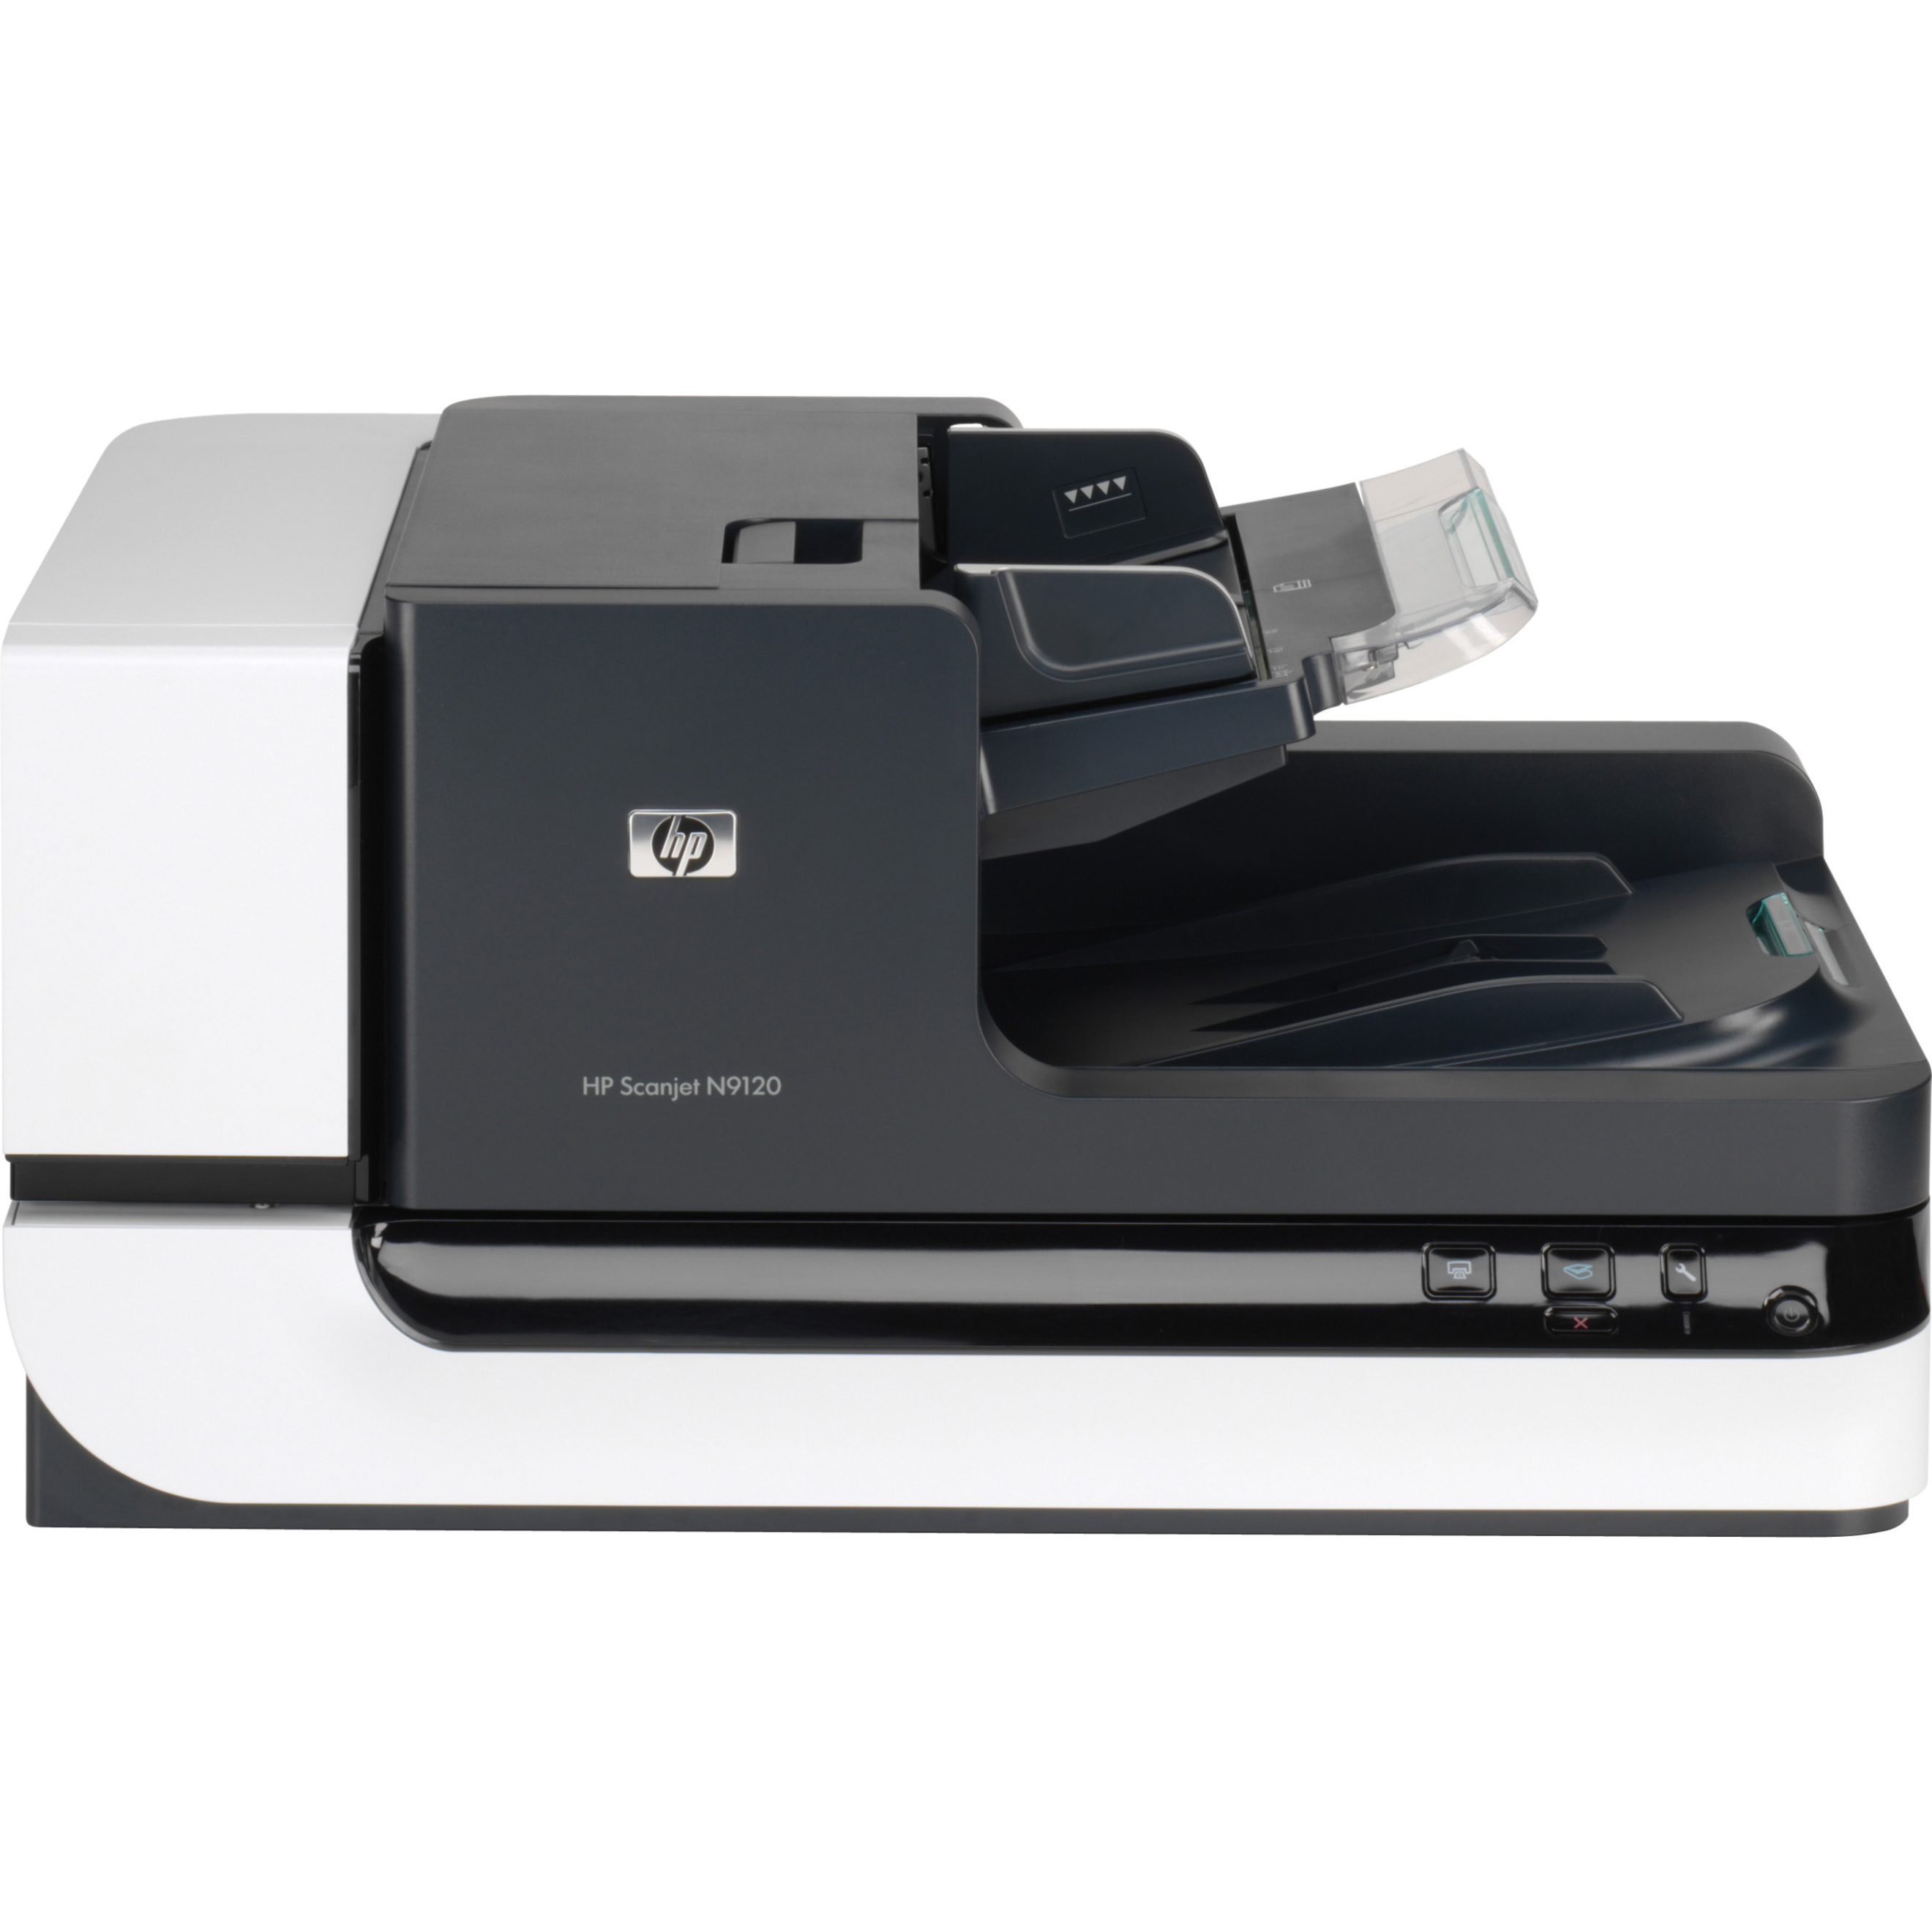 HP ScanJet Enterprise Flow N9120 Flatbed Scanner - document scanner - image 3 of 5